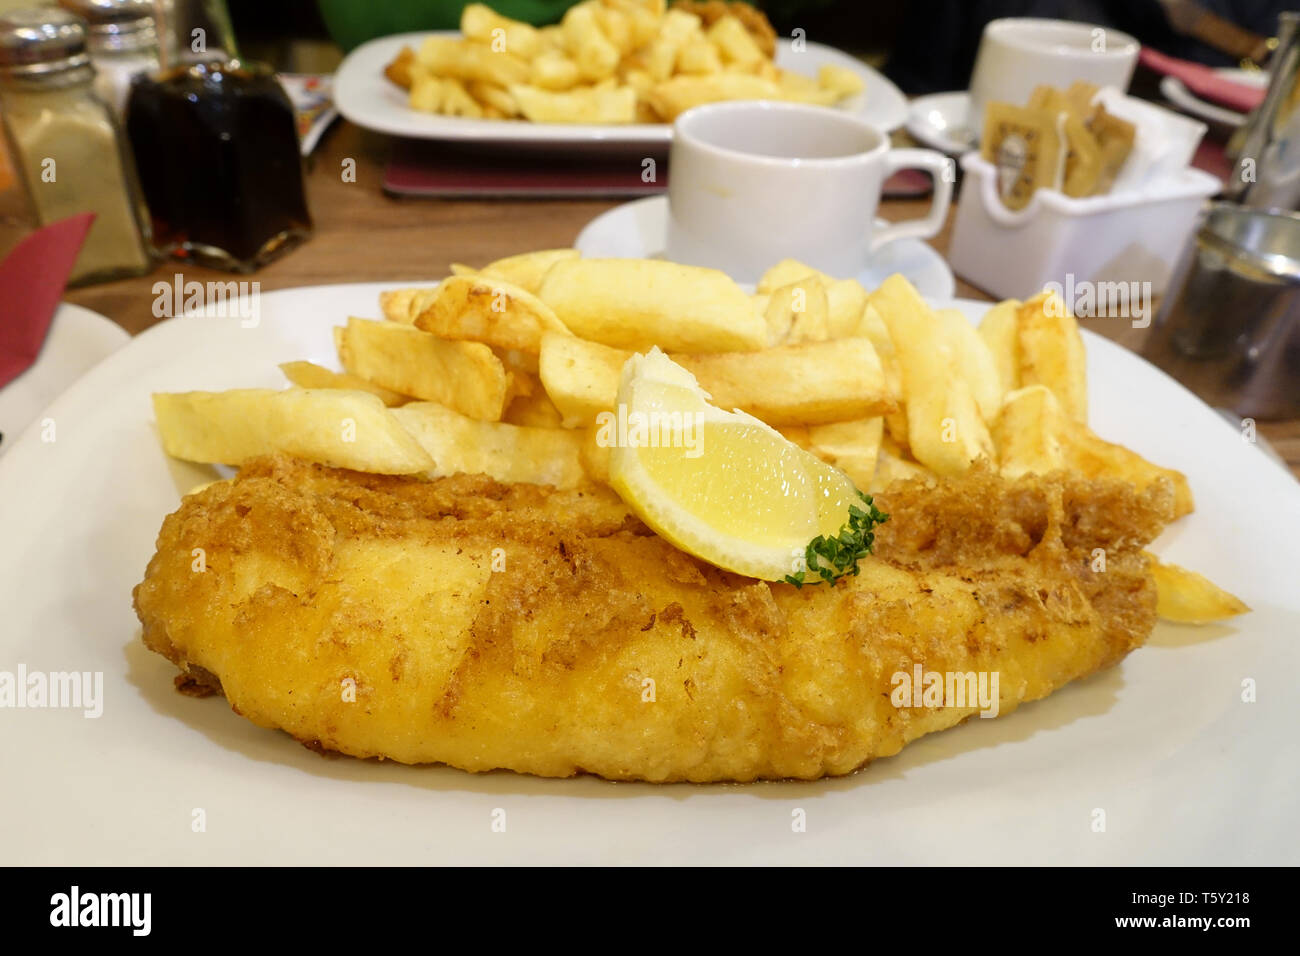 Un traditionnel fish and chips anglais repas servi sur une table dans un restaurant fish and chips. Les plaques contient des plaquettes et battues, morue plateau Banque D'Images